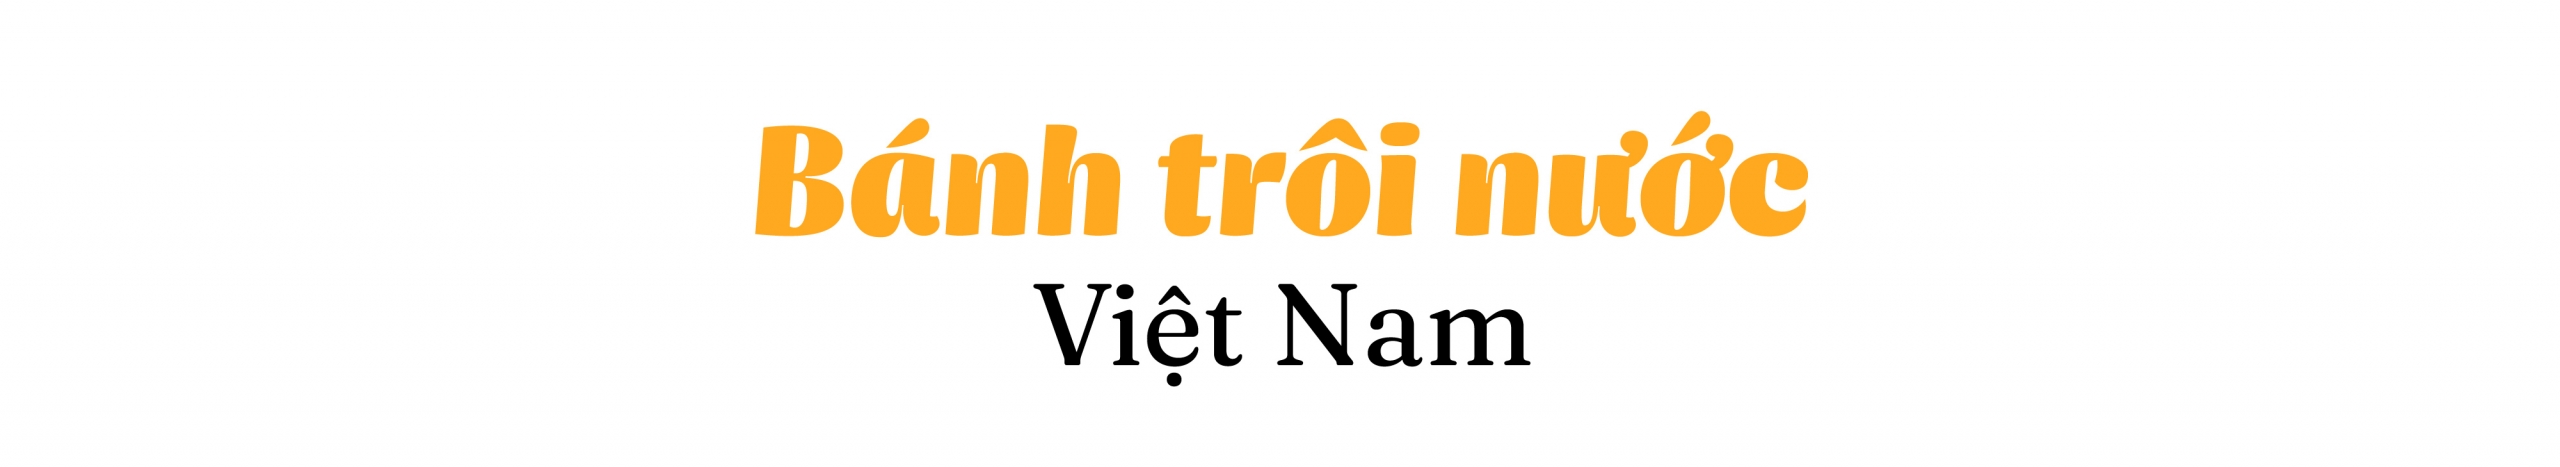 Bánh trôi nước Việt Nam